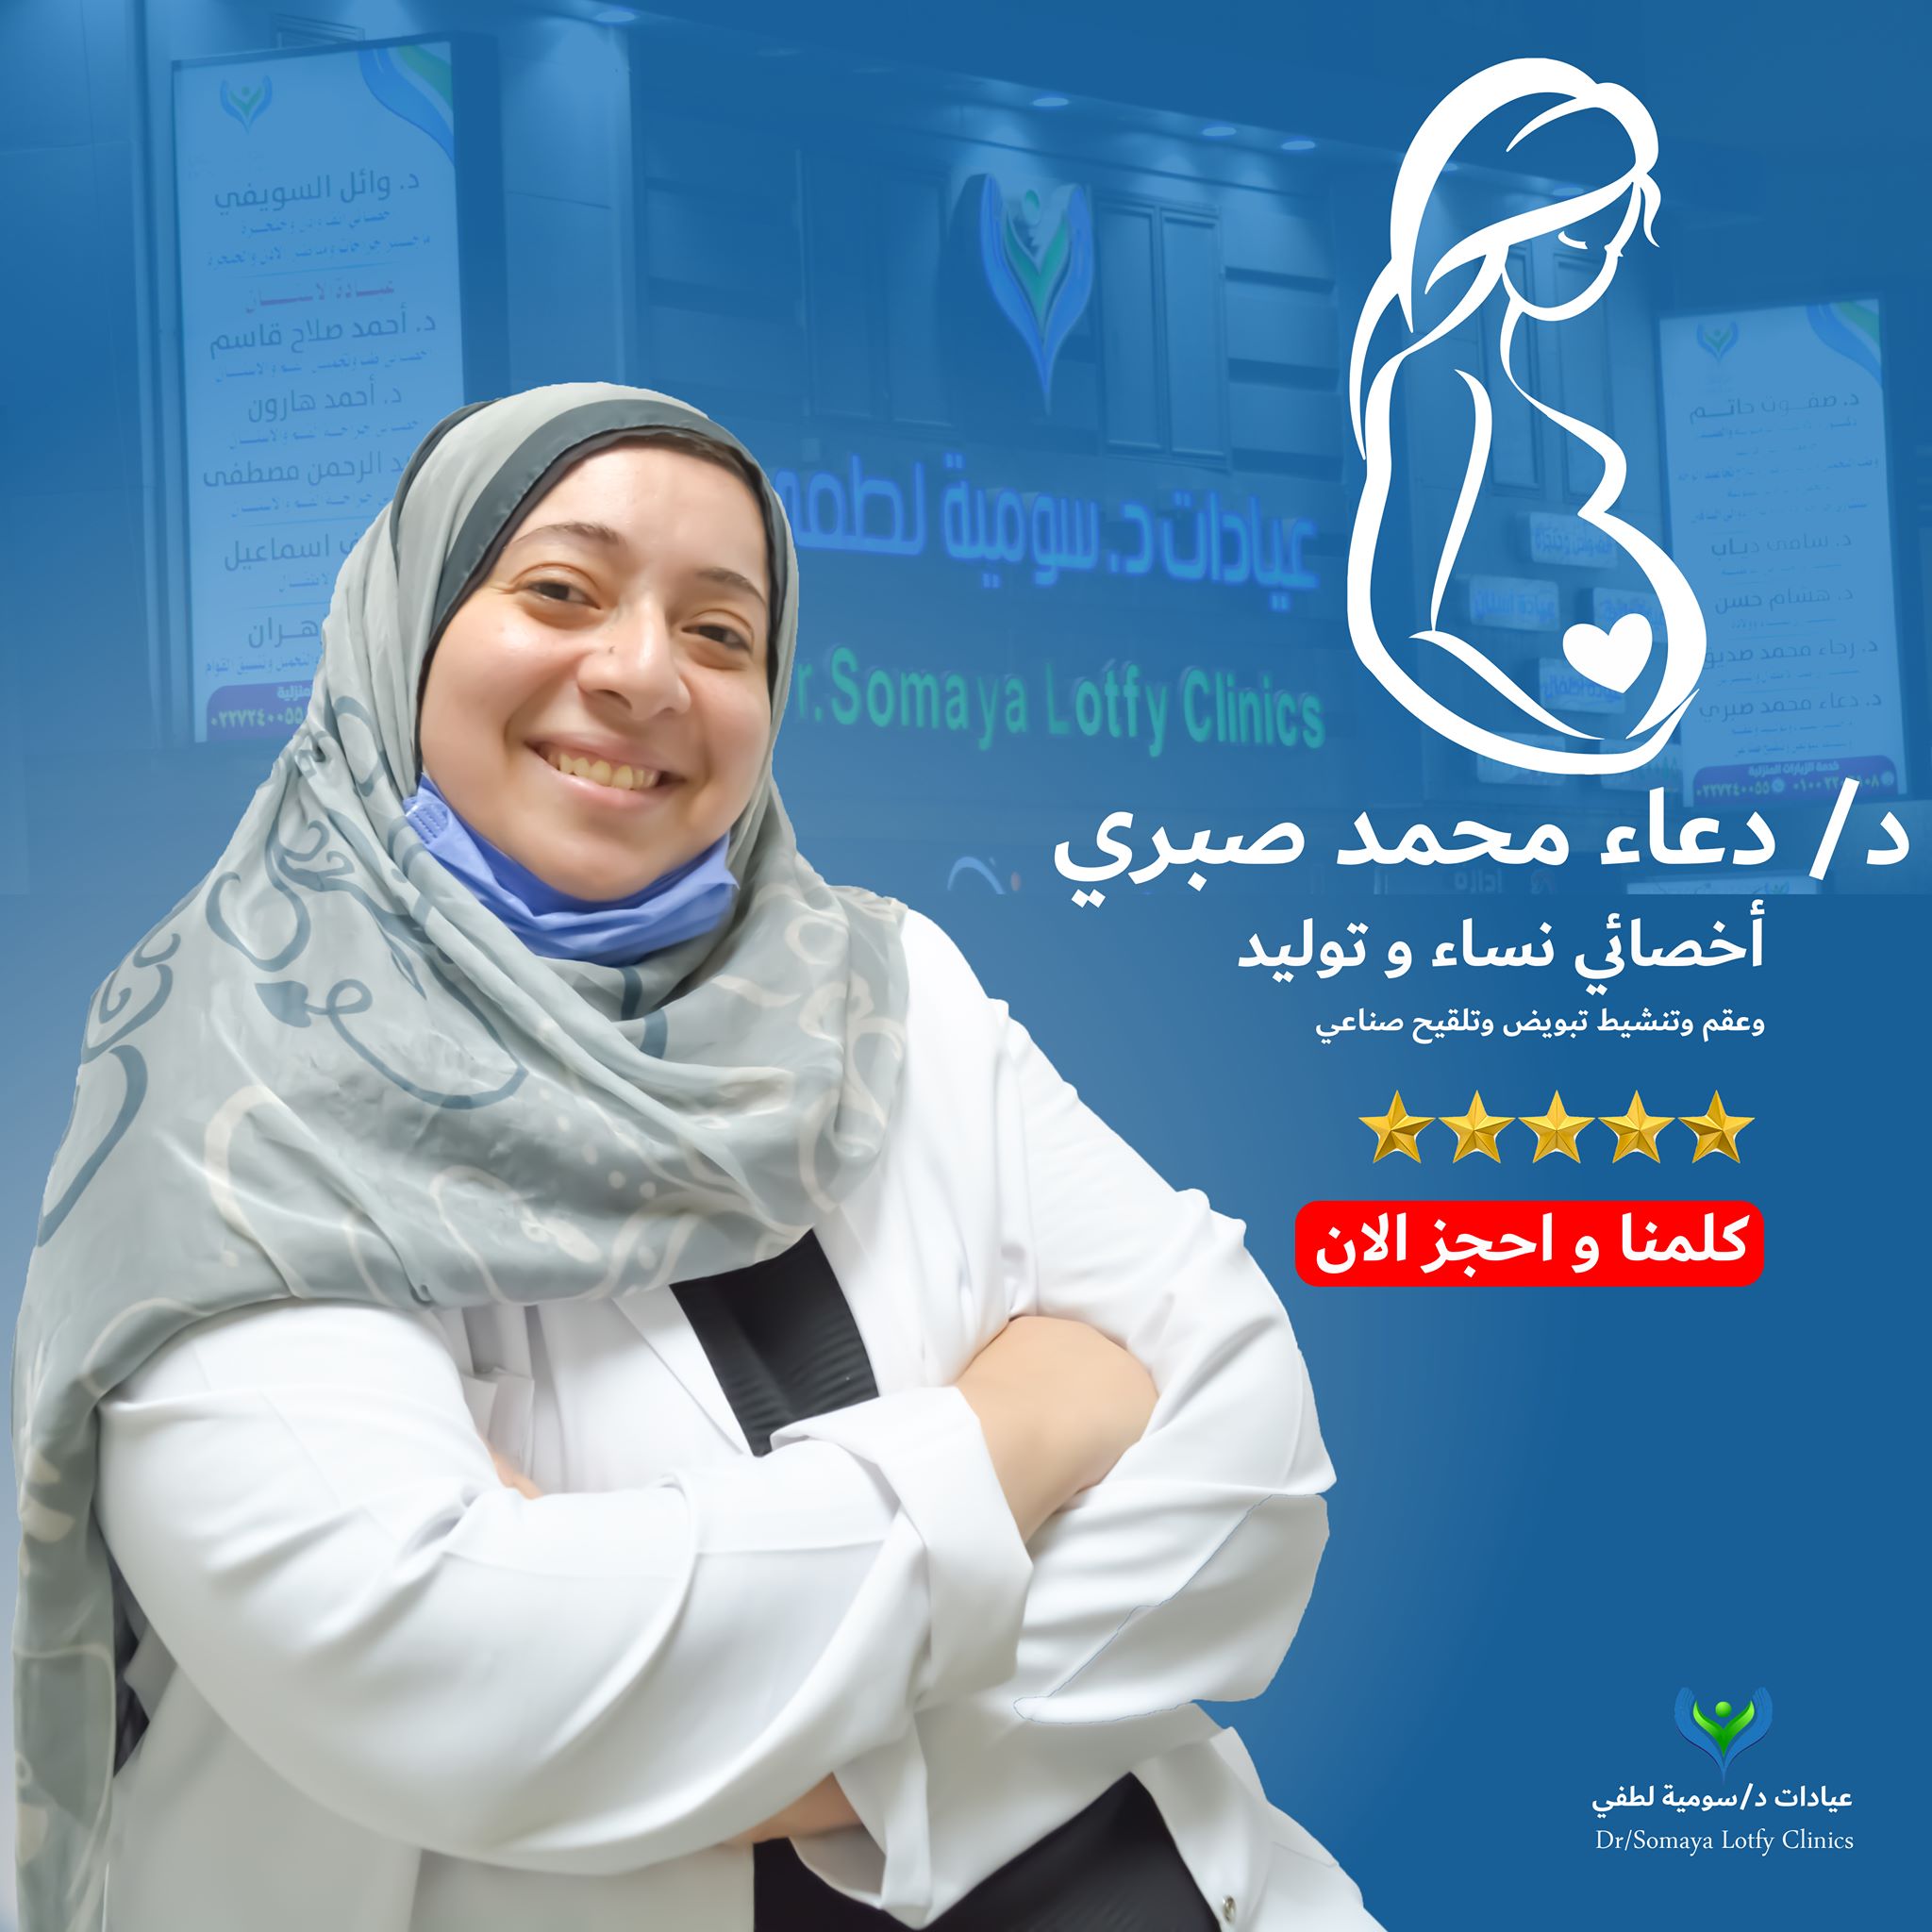 Dr. Doaa Mohamed Sabry